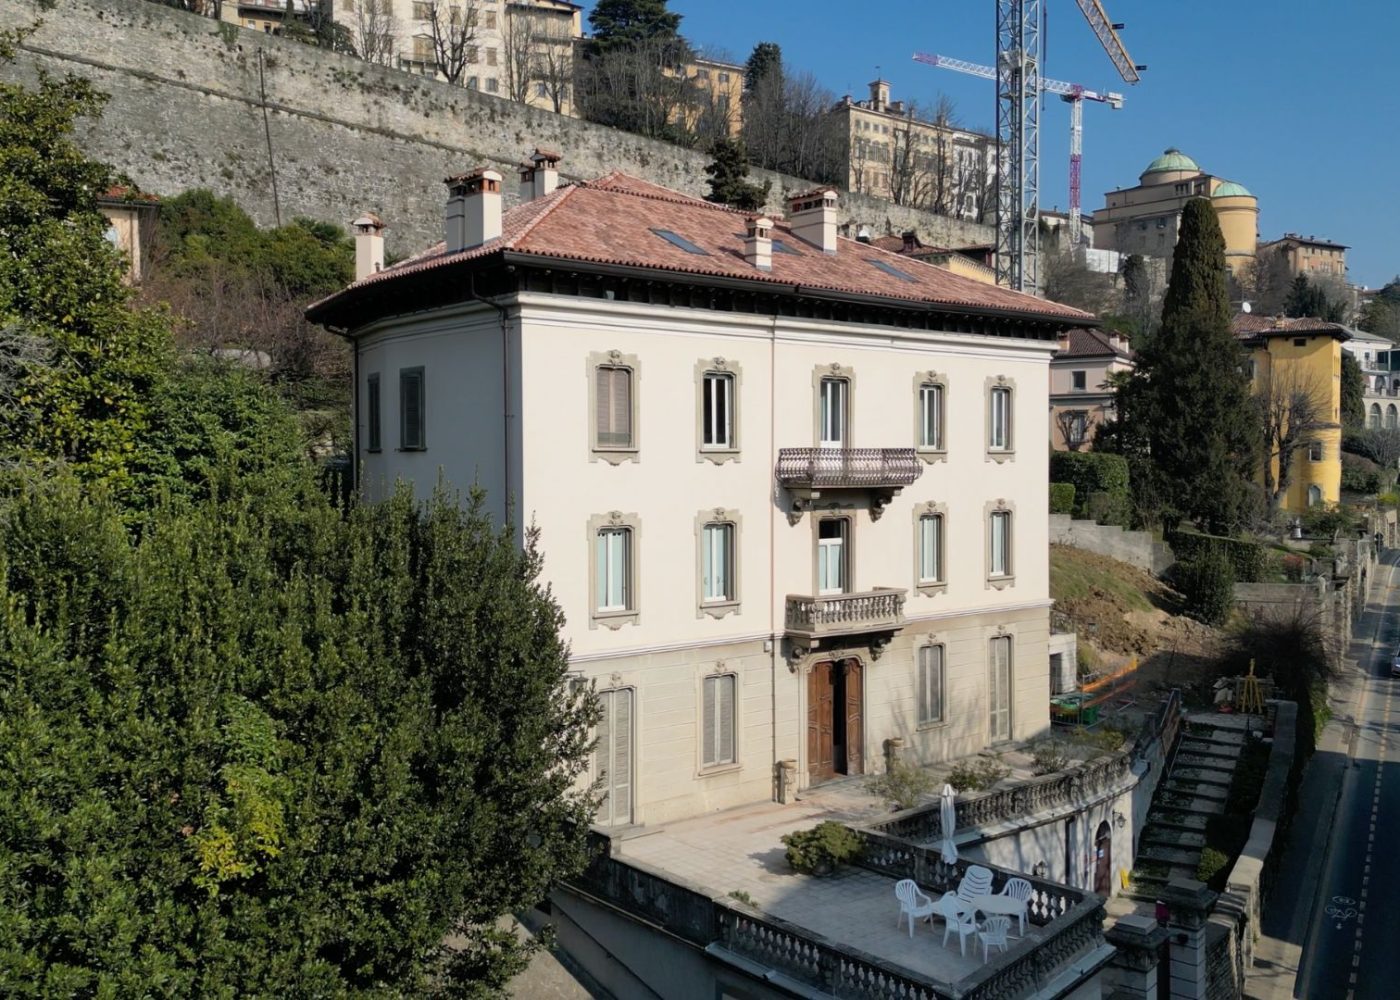 Condominio Vittorio Emanuele Bergamo Revo Costruzioni 2